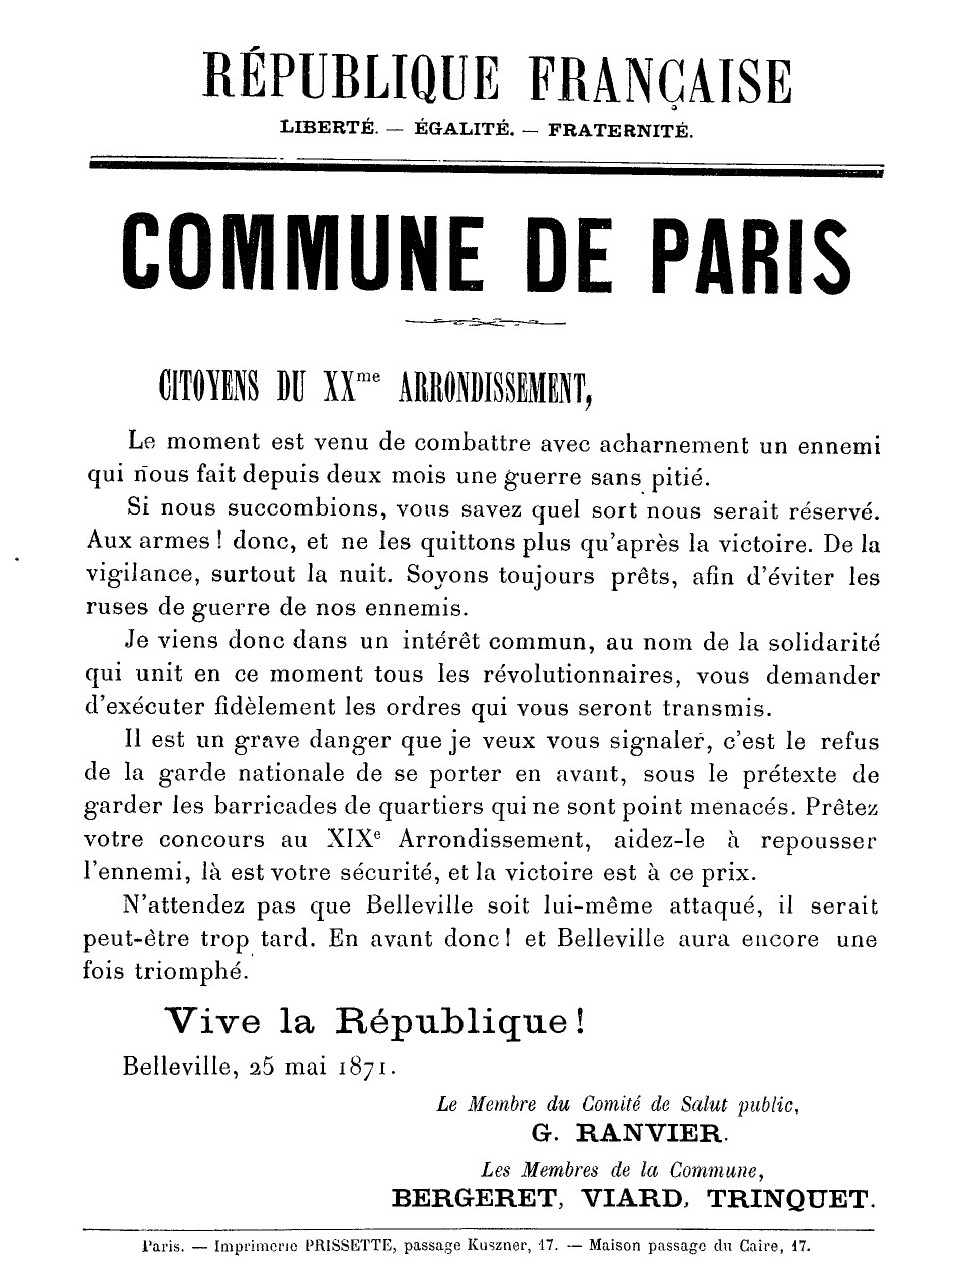 Affiche de la Commune de Paris du 25 mai 1871 signée Ranvier